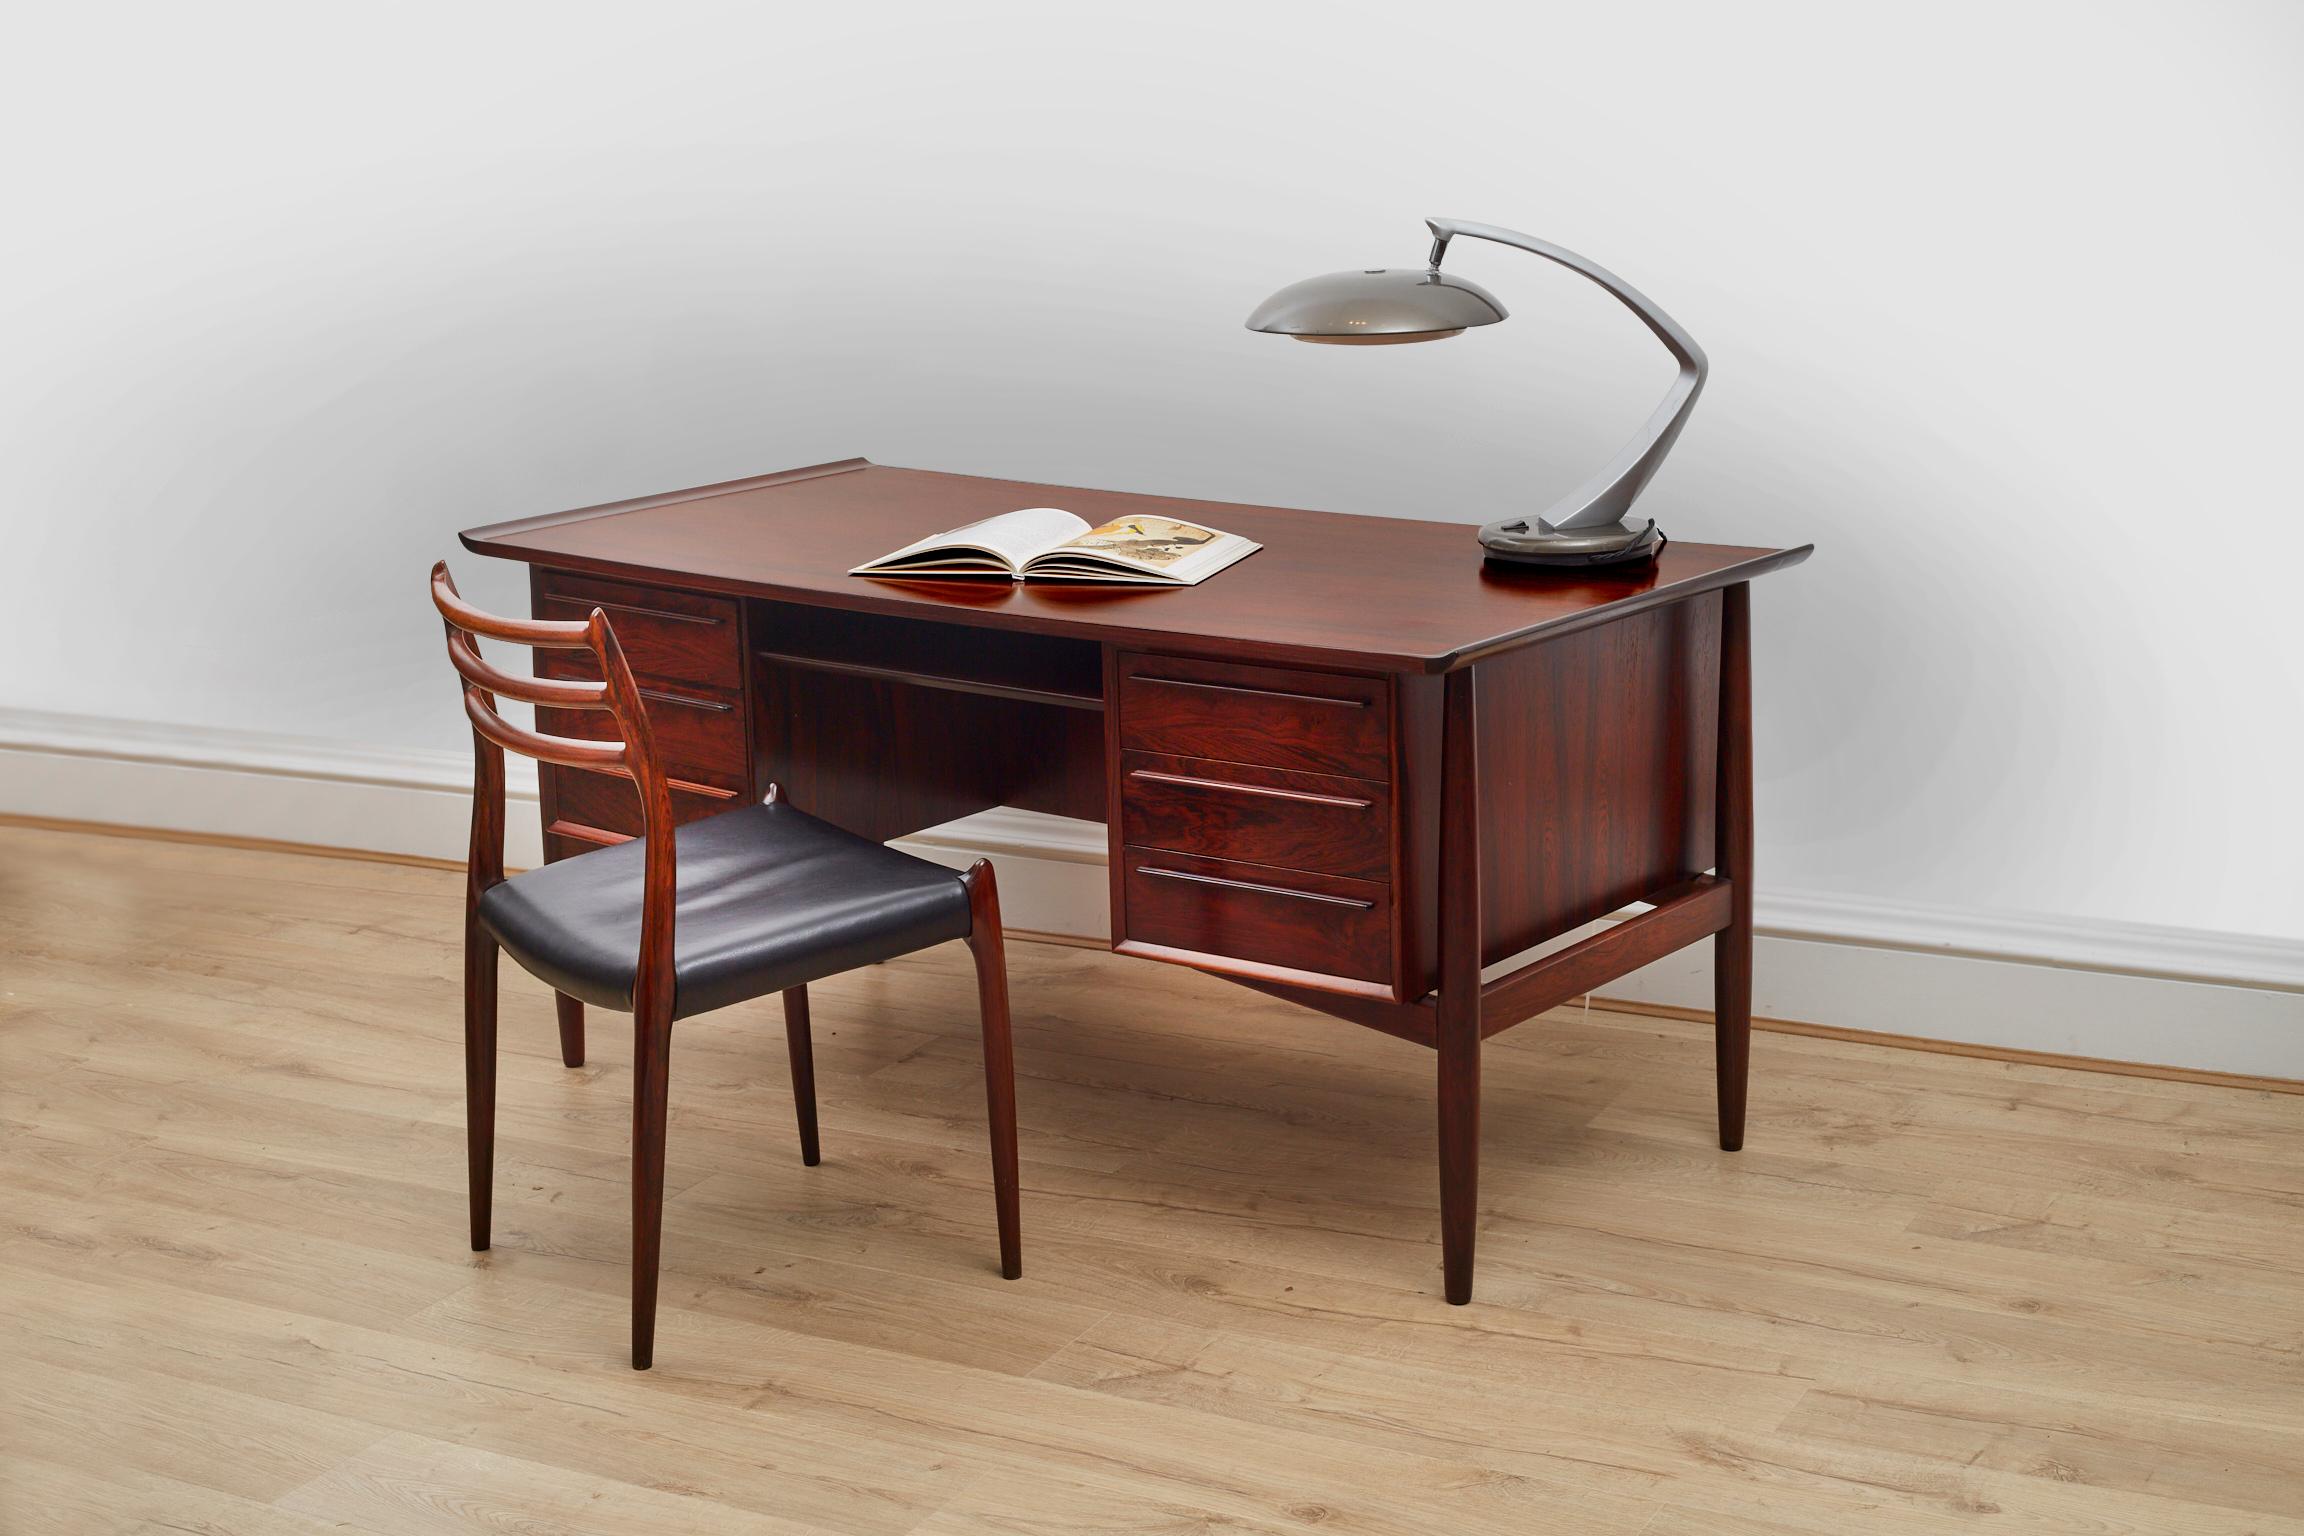 Arne Vodders stilvoller Schreibtisch aus der Mitte des Jahrhunderts, hergestellt von Sibast in den 1960er Jahren. Einer der besten dänischen Möbelhersteller.

Dieser aus Palisanderholz gefertigte Schreibtisch bietet viel Platz für alle Ihre